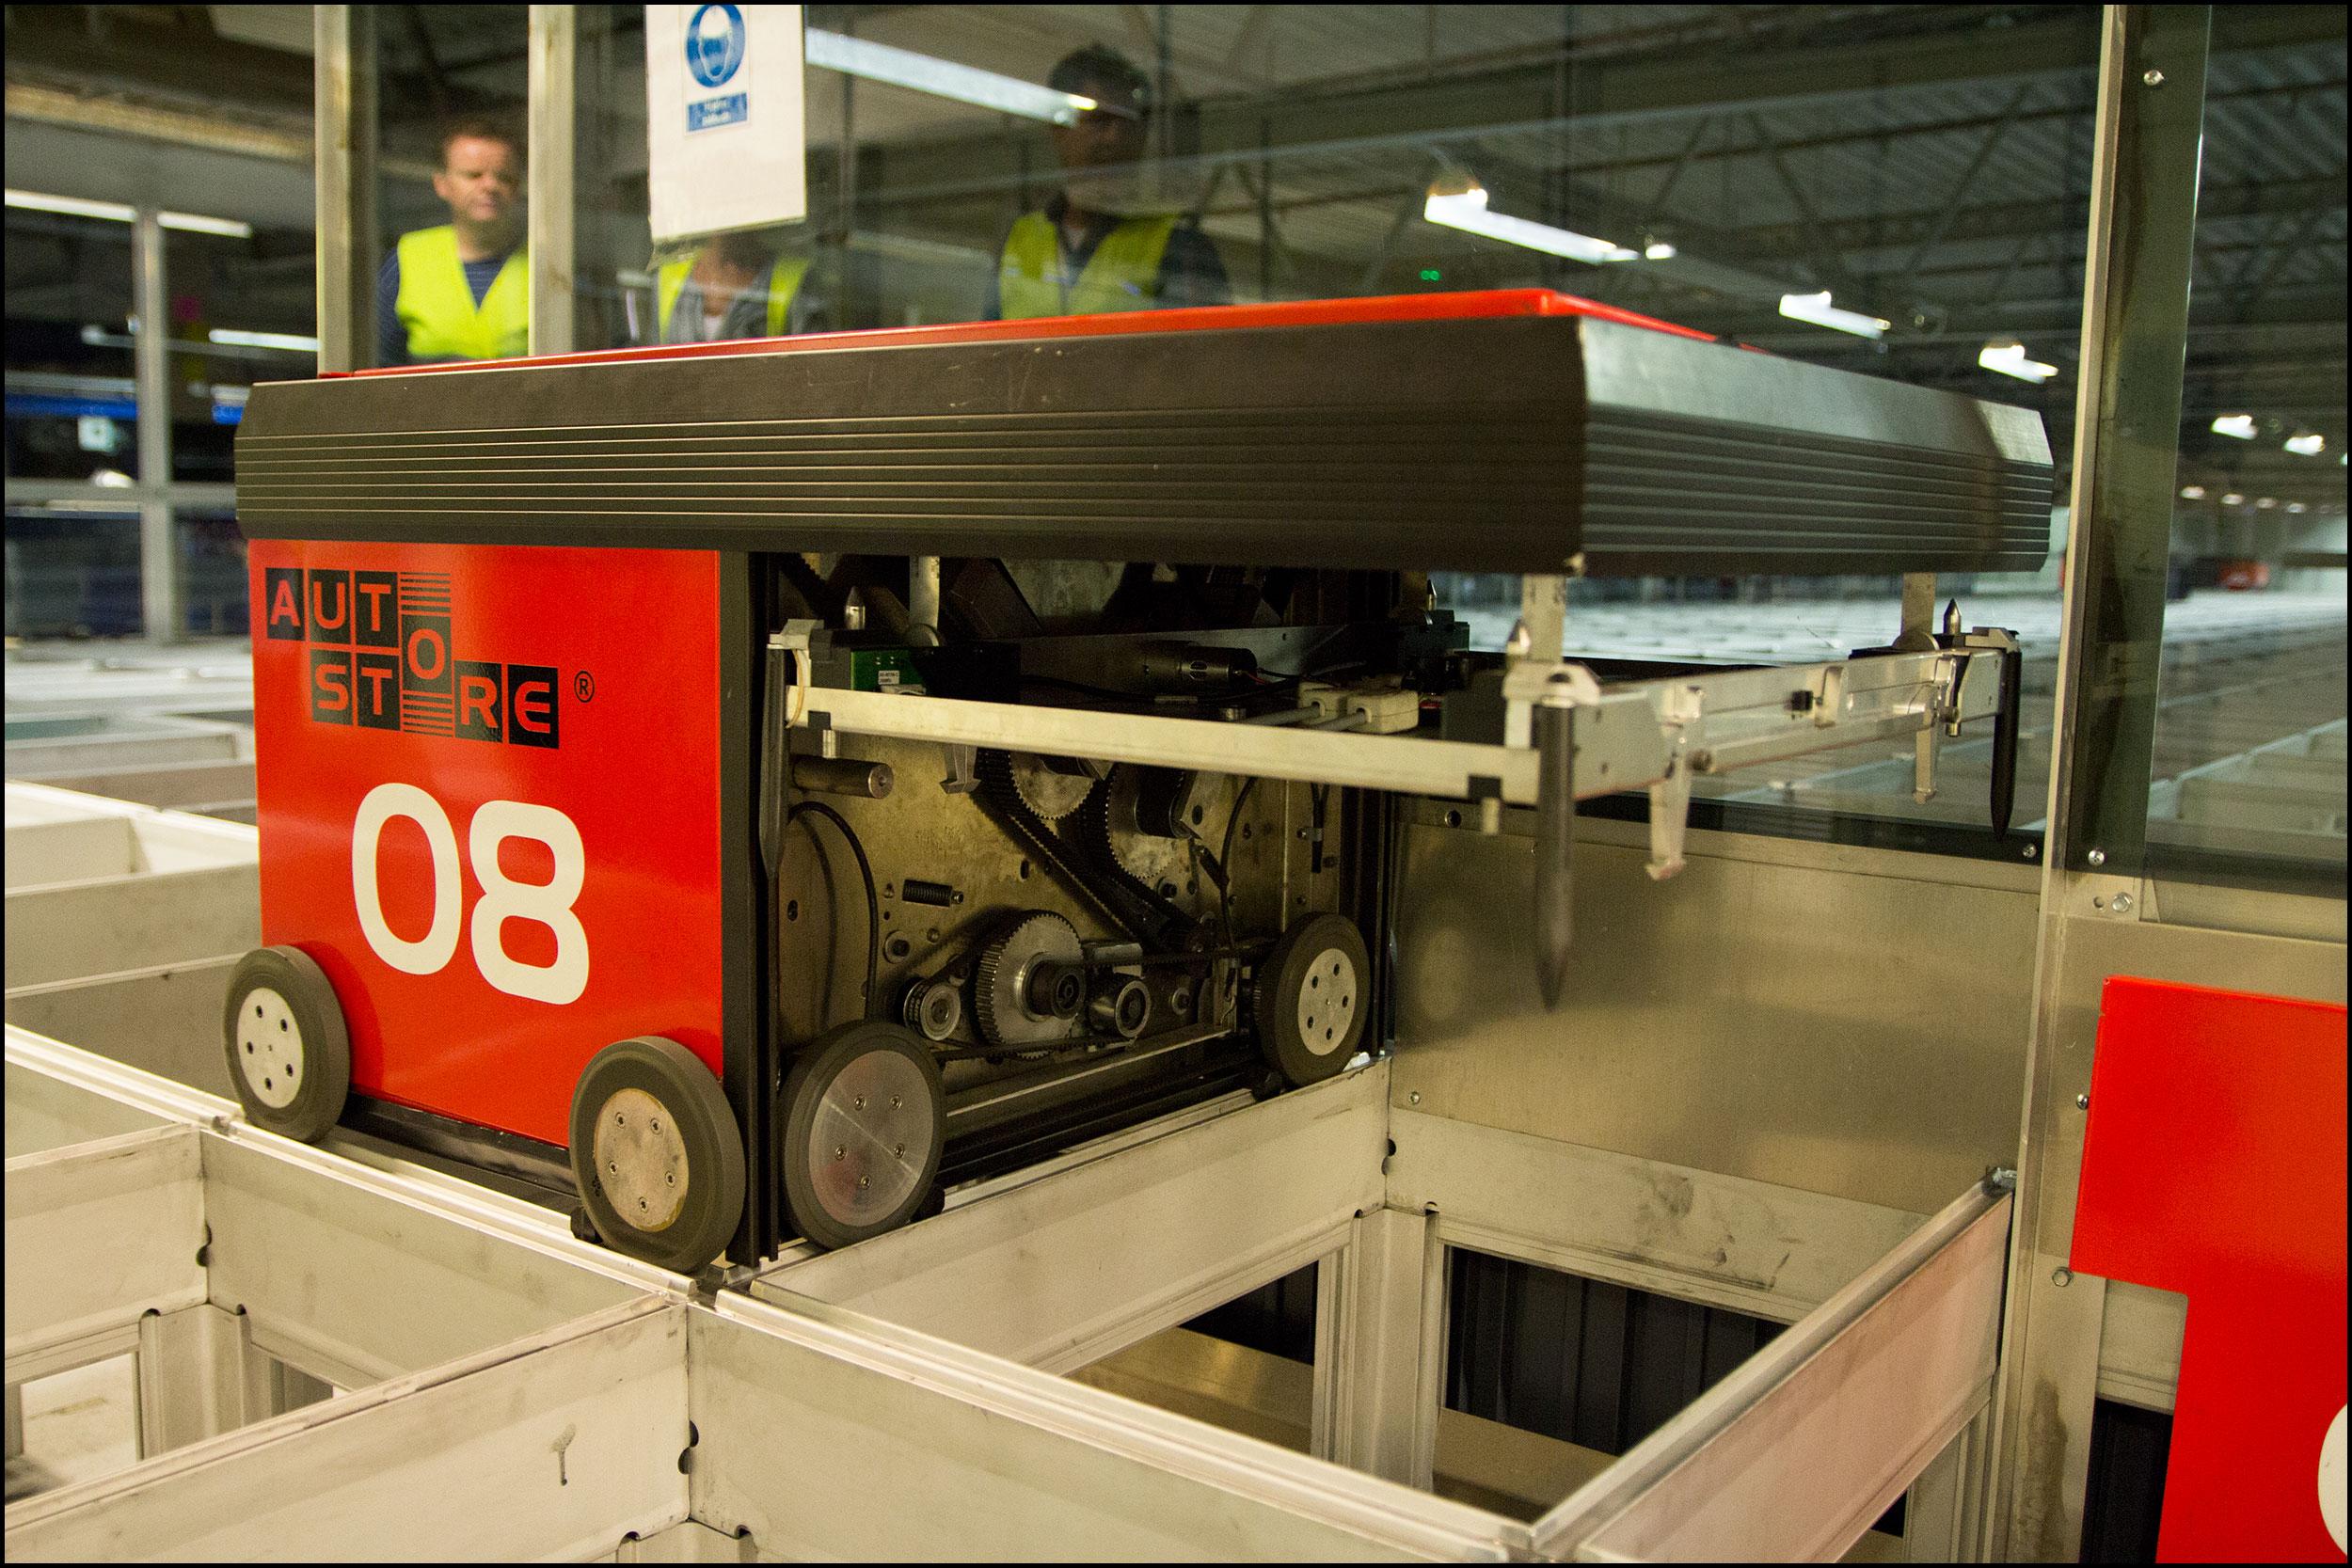 En av de røde robotene står til reparasjon.Foto: Jørgen Elton Nilsen, Hardware.no